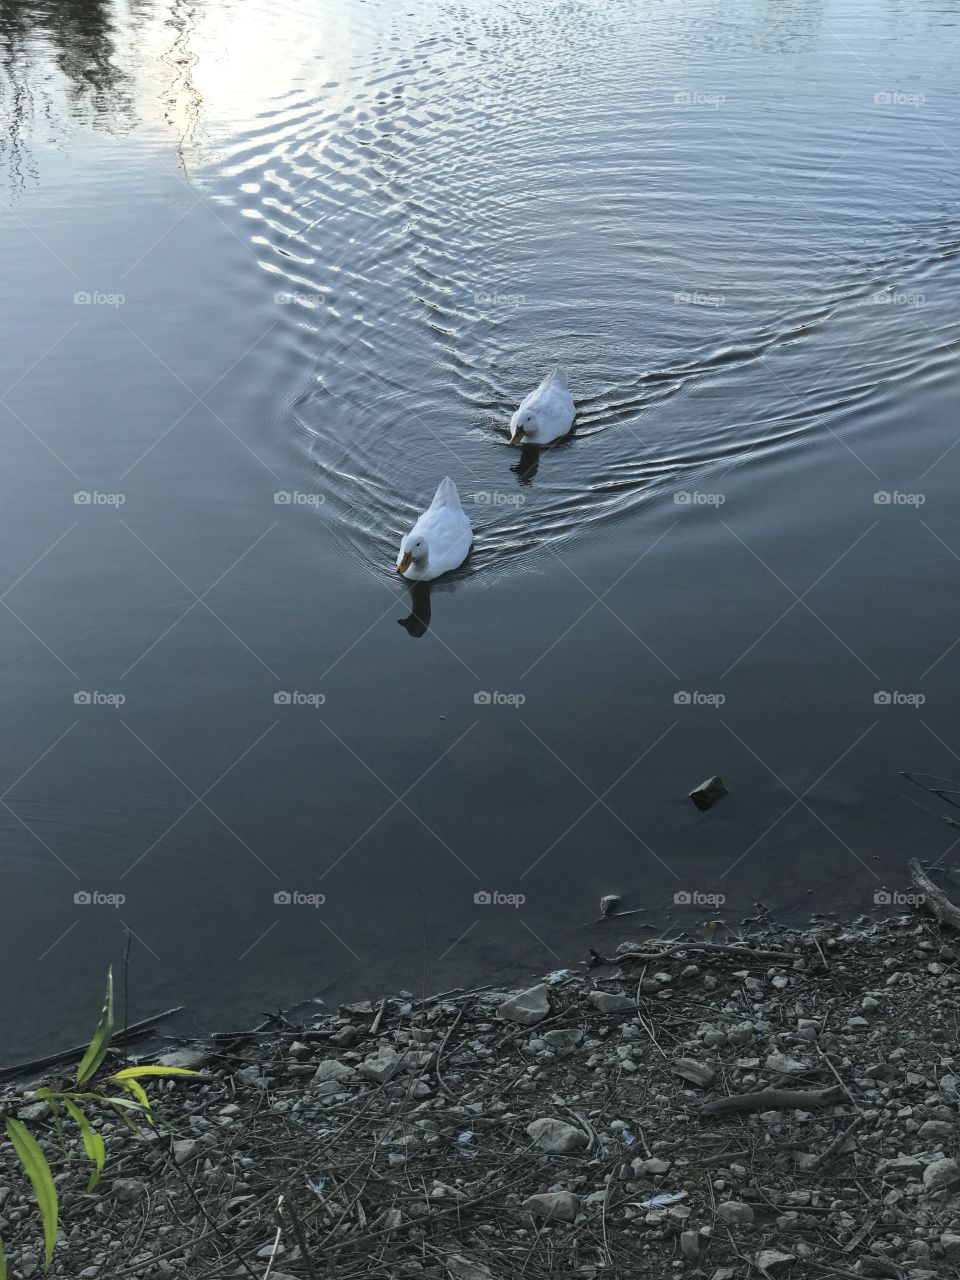 Ducks on water 